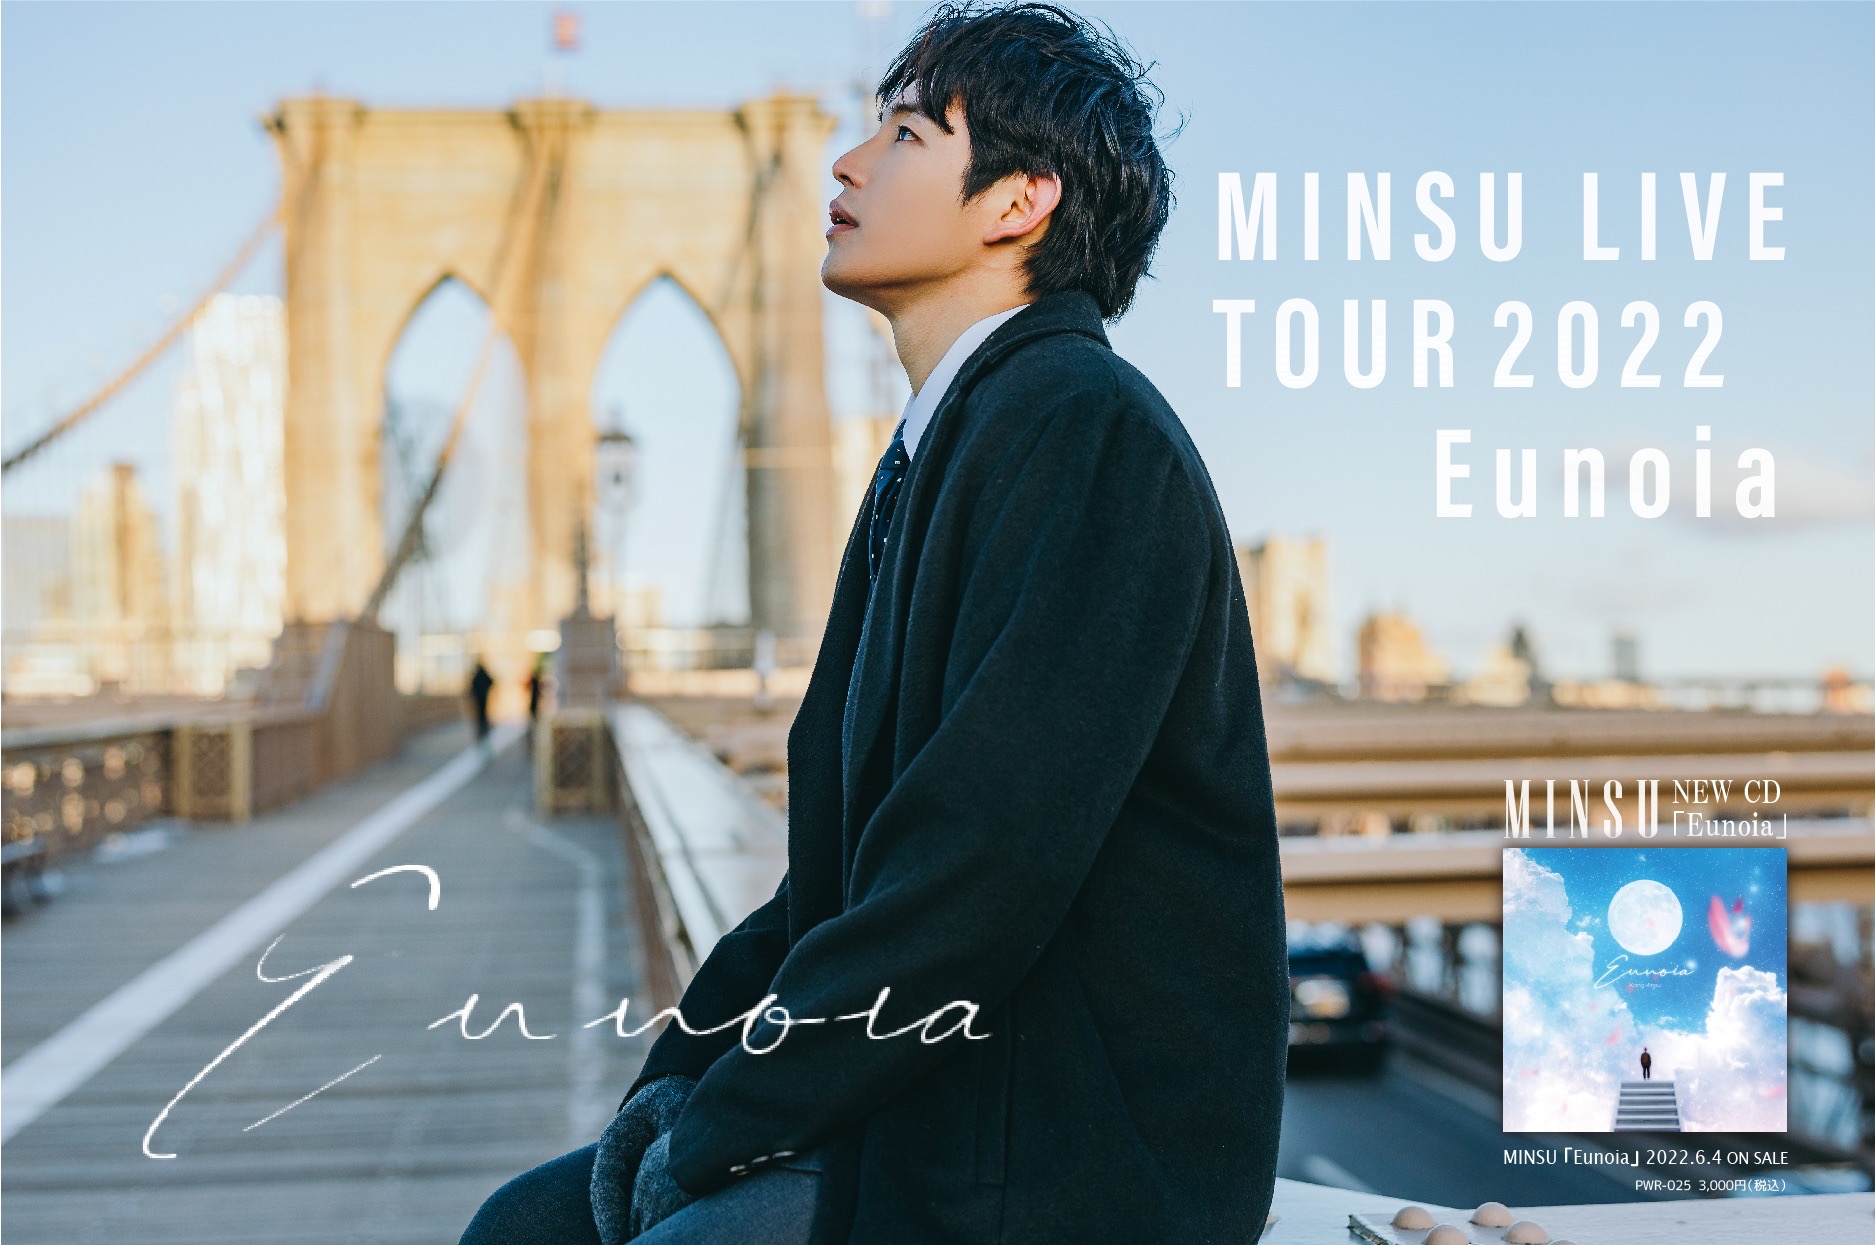 MINSU「Eunoia」 Live tour